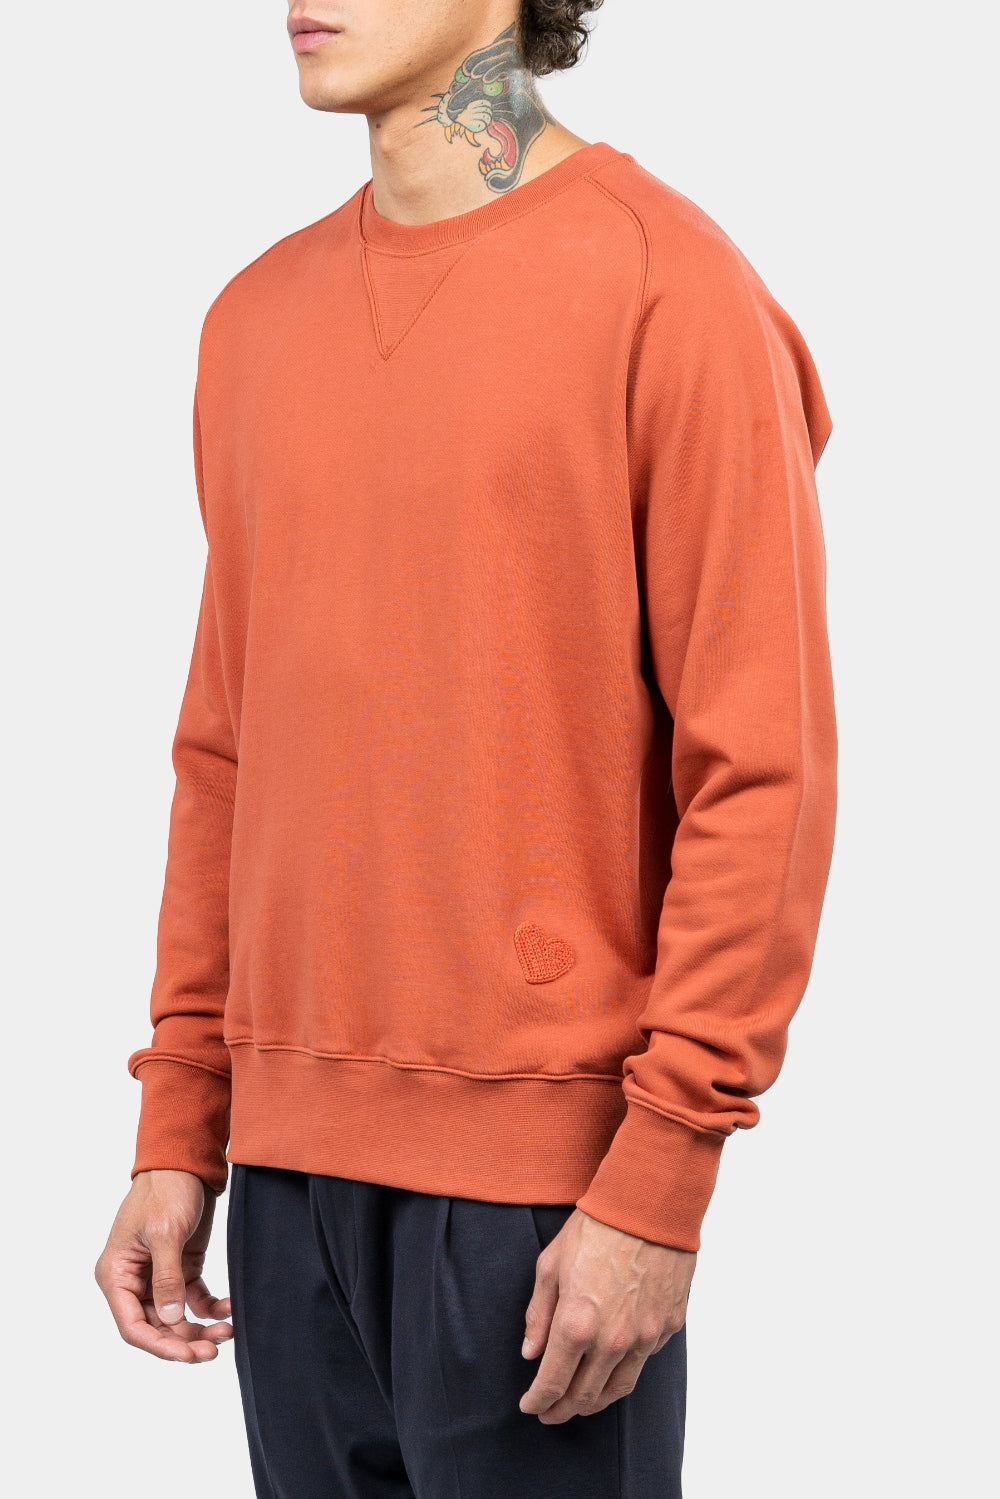 80's Character Comfort Sweatshirt